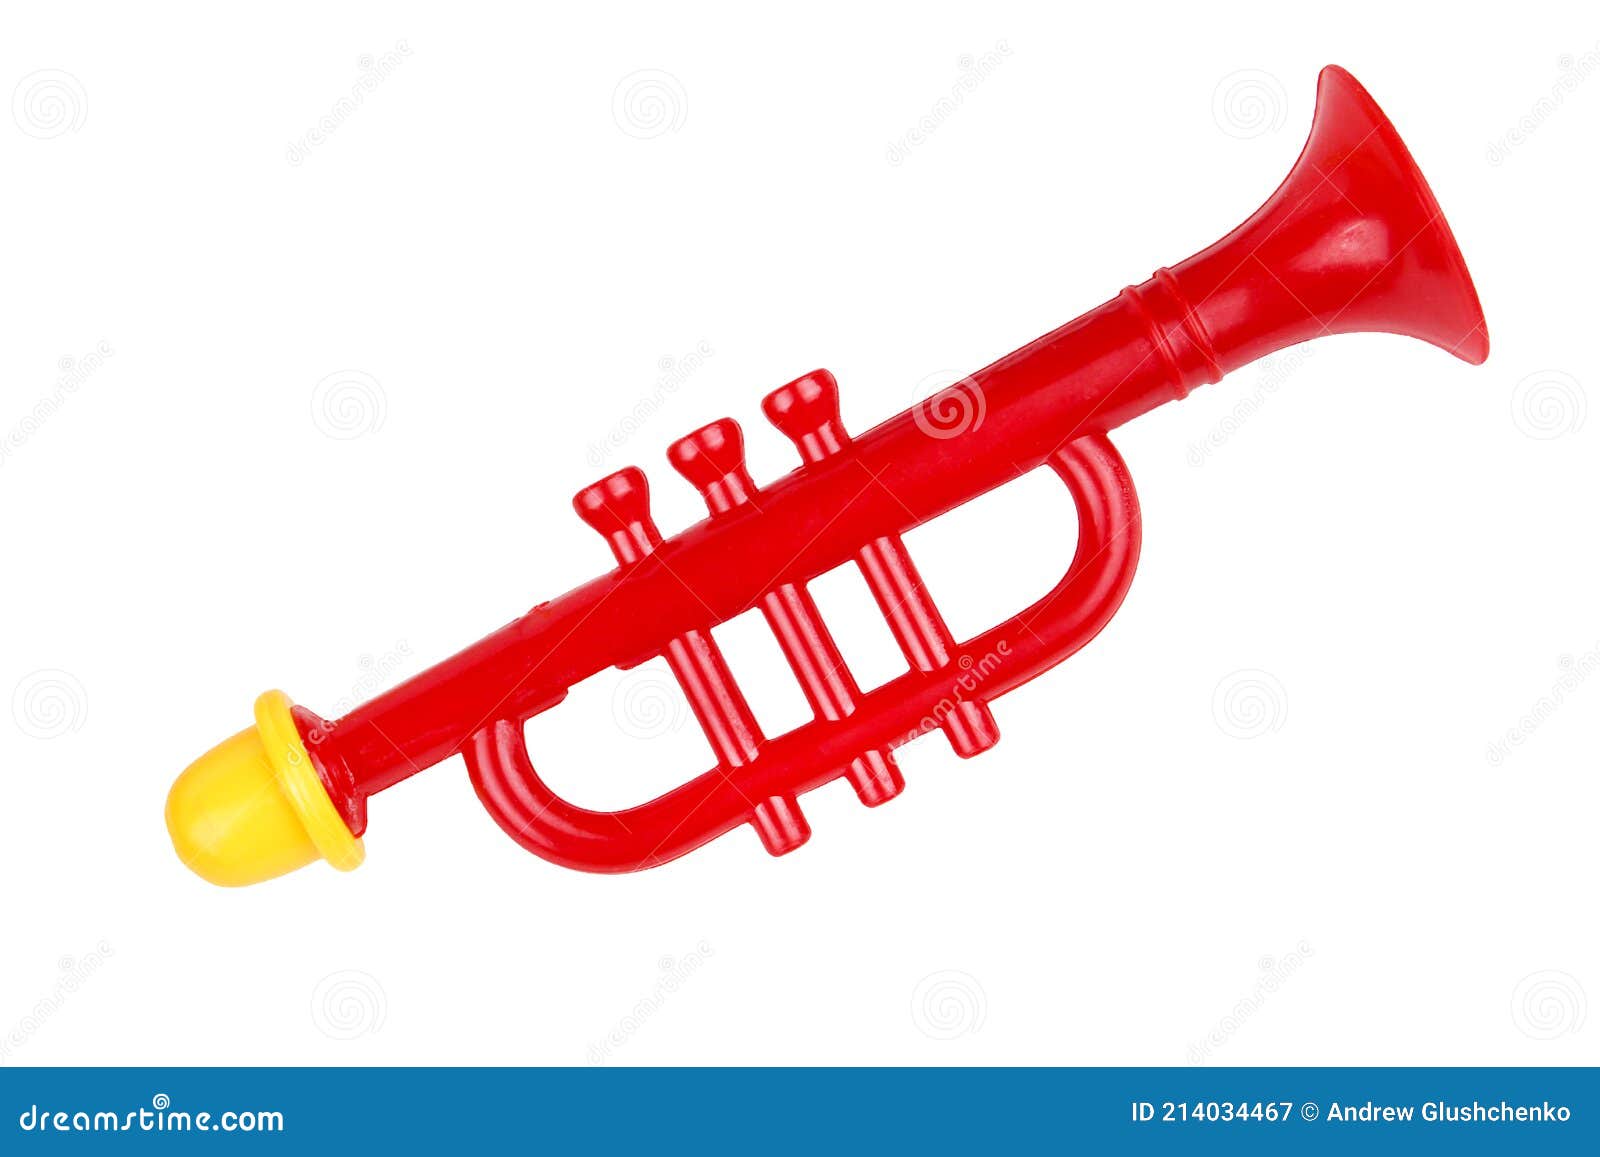 Trompeta De Juguete De Color Rojo. Instrumento Musical Infantil. Sobre Un  Fondo Blanco Aislado Imagen de archivo - Imagen de volumen, elemento:  214034467